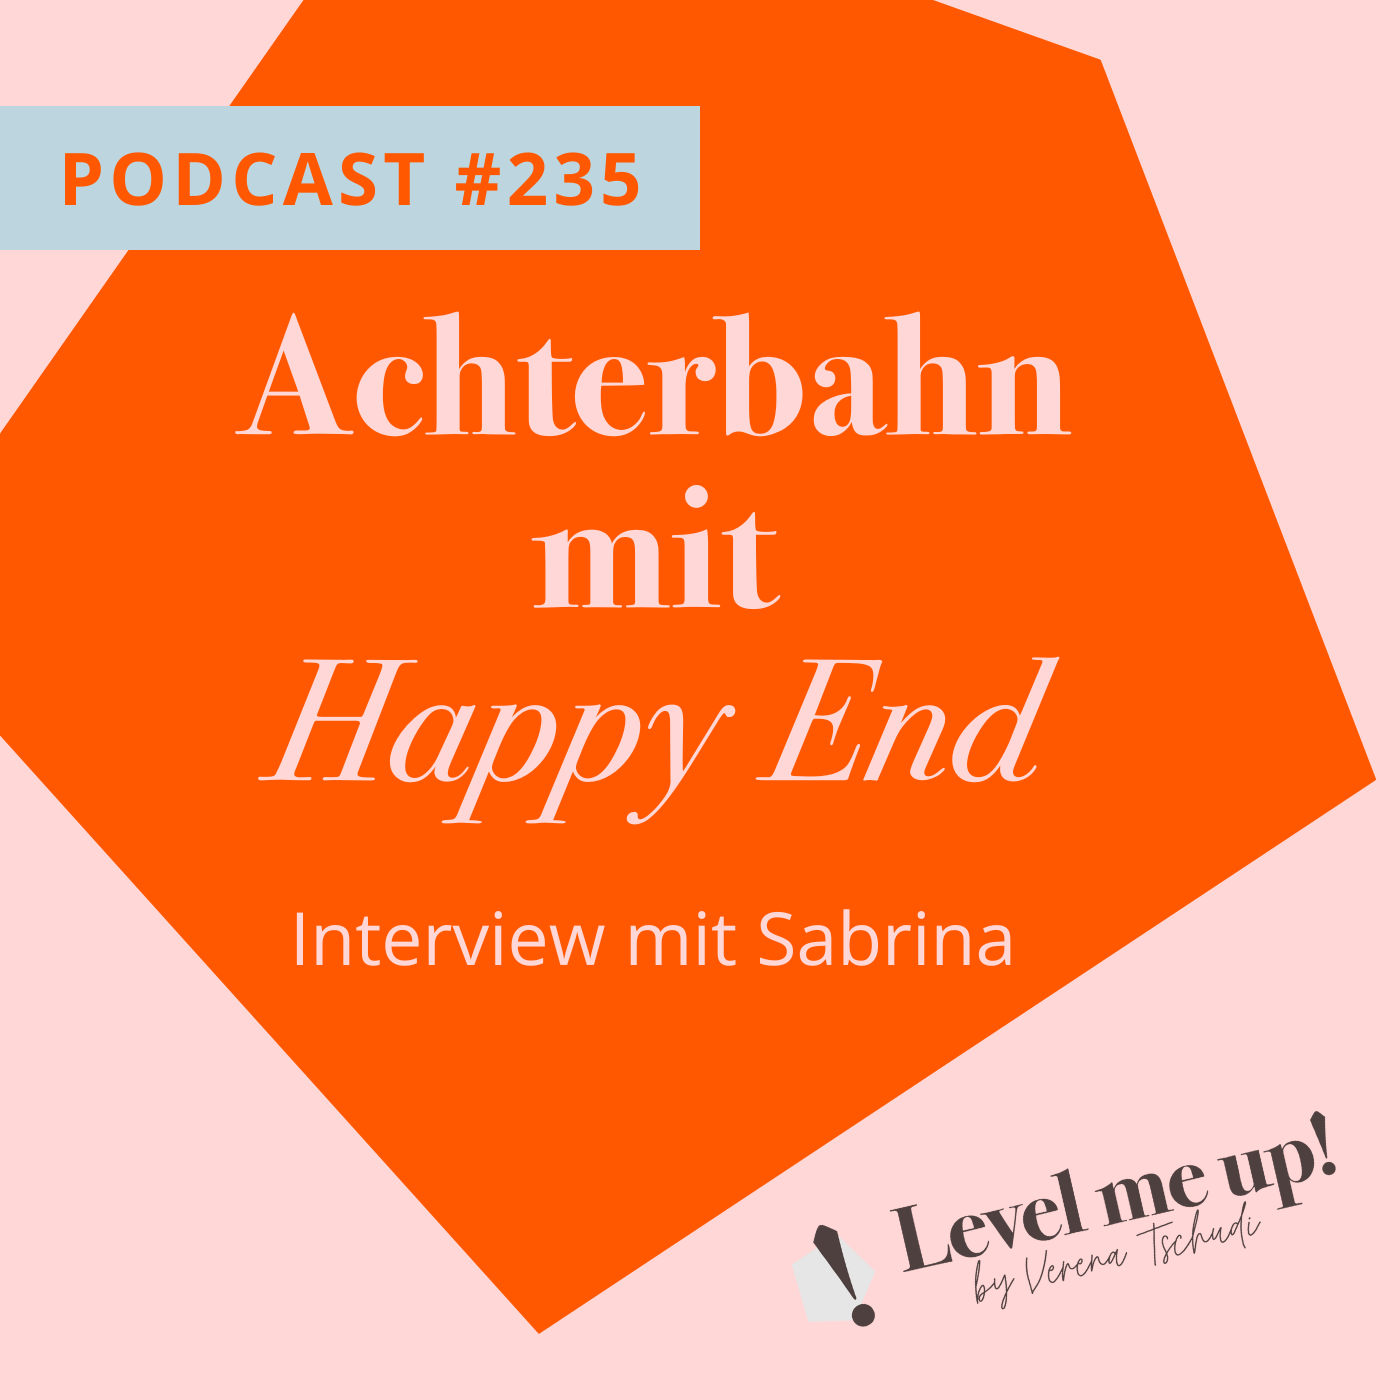 Achterbahn mit Happy End Interview mit Sabdrina